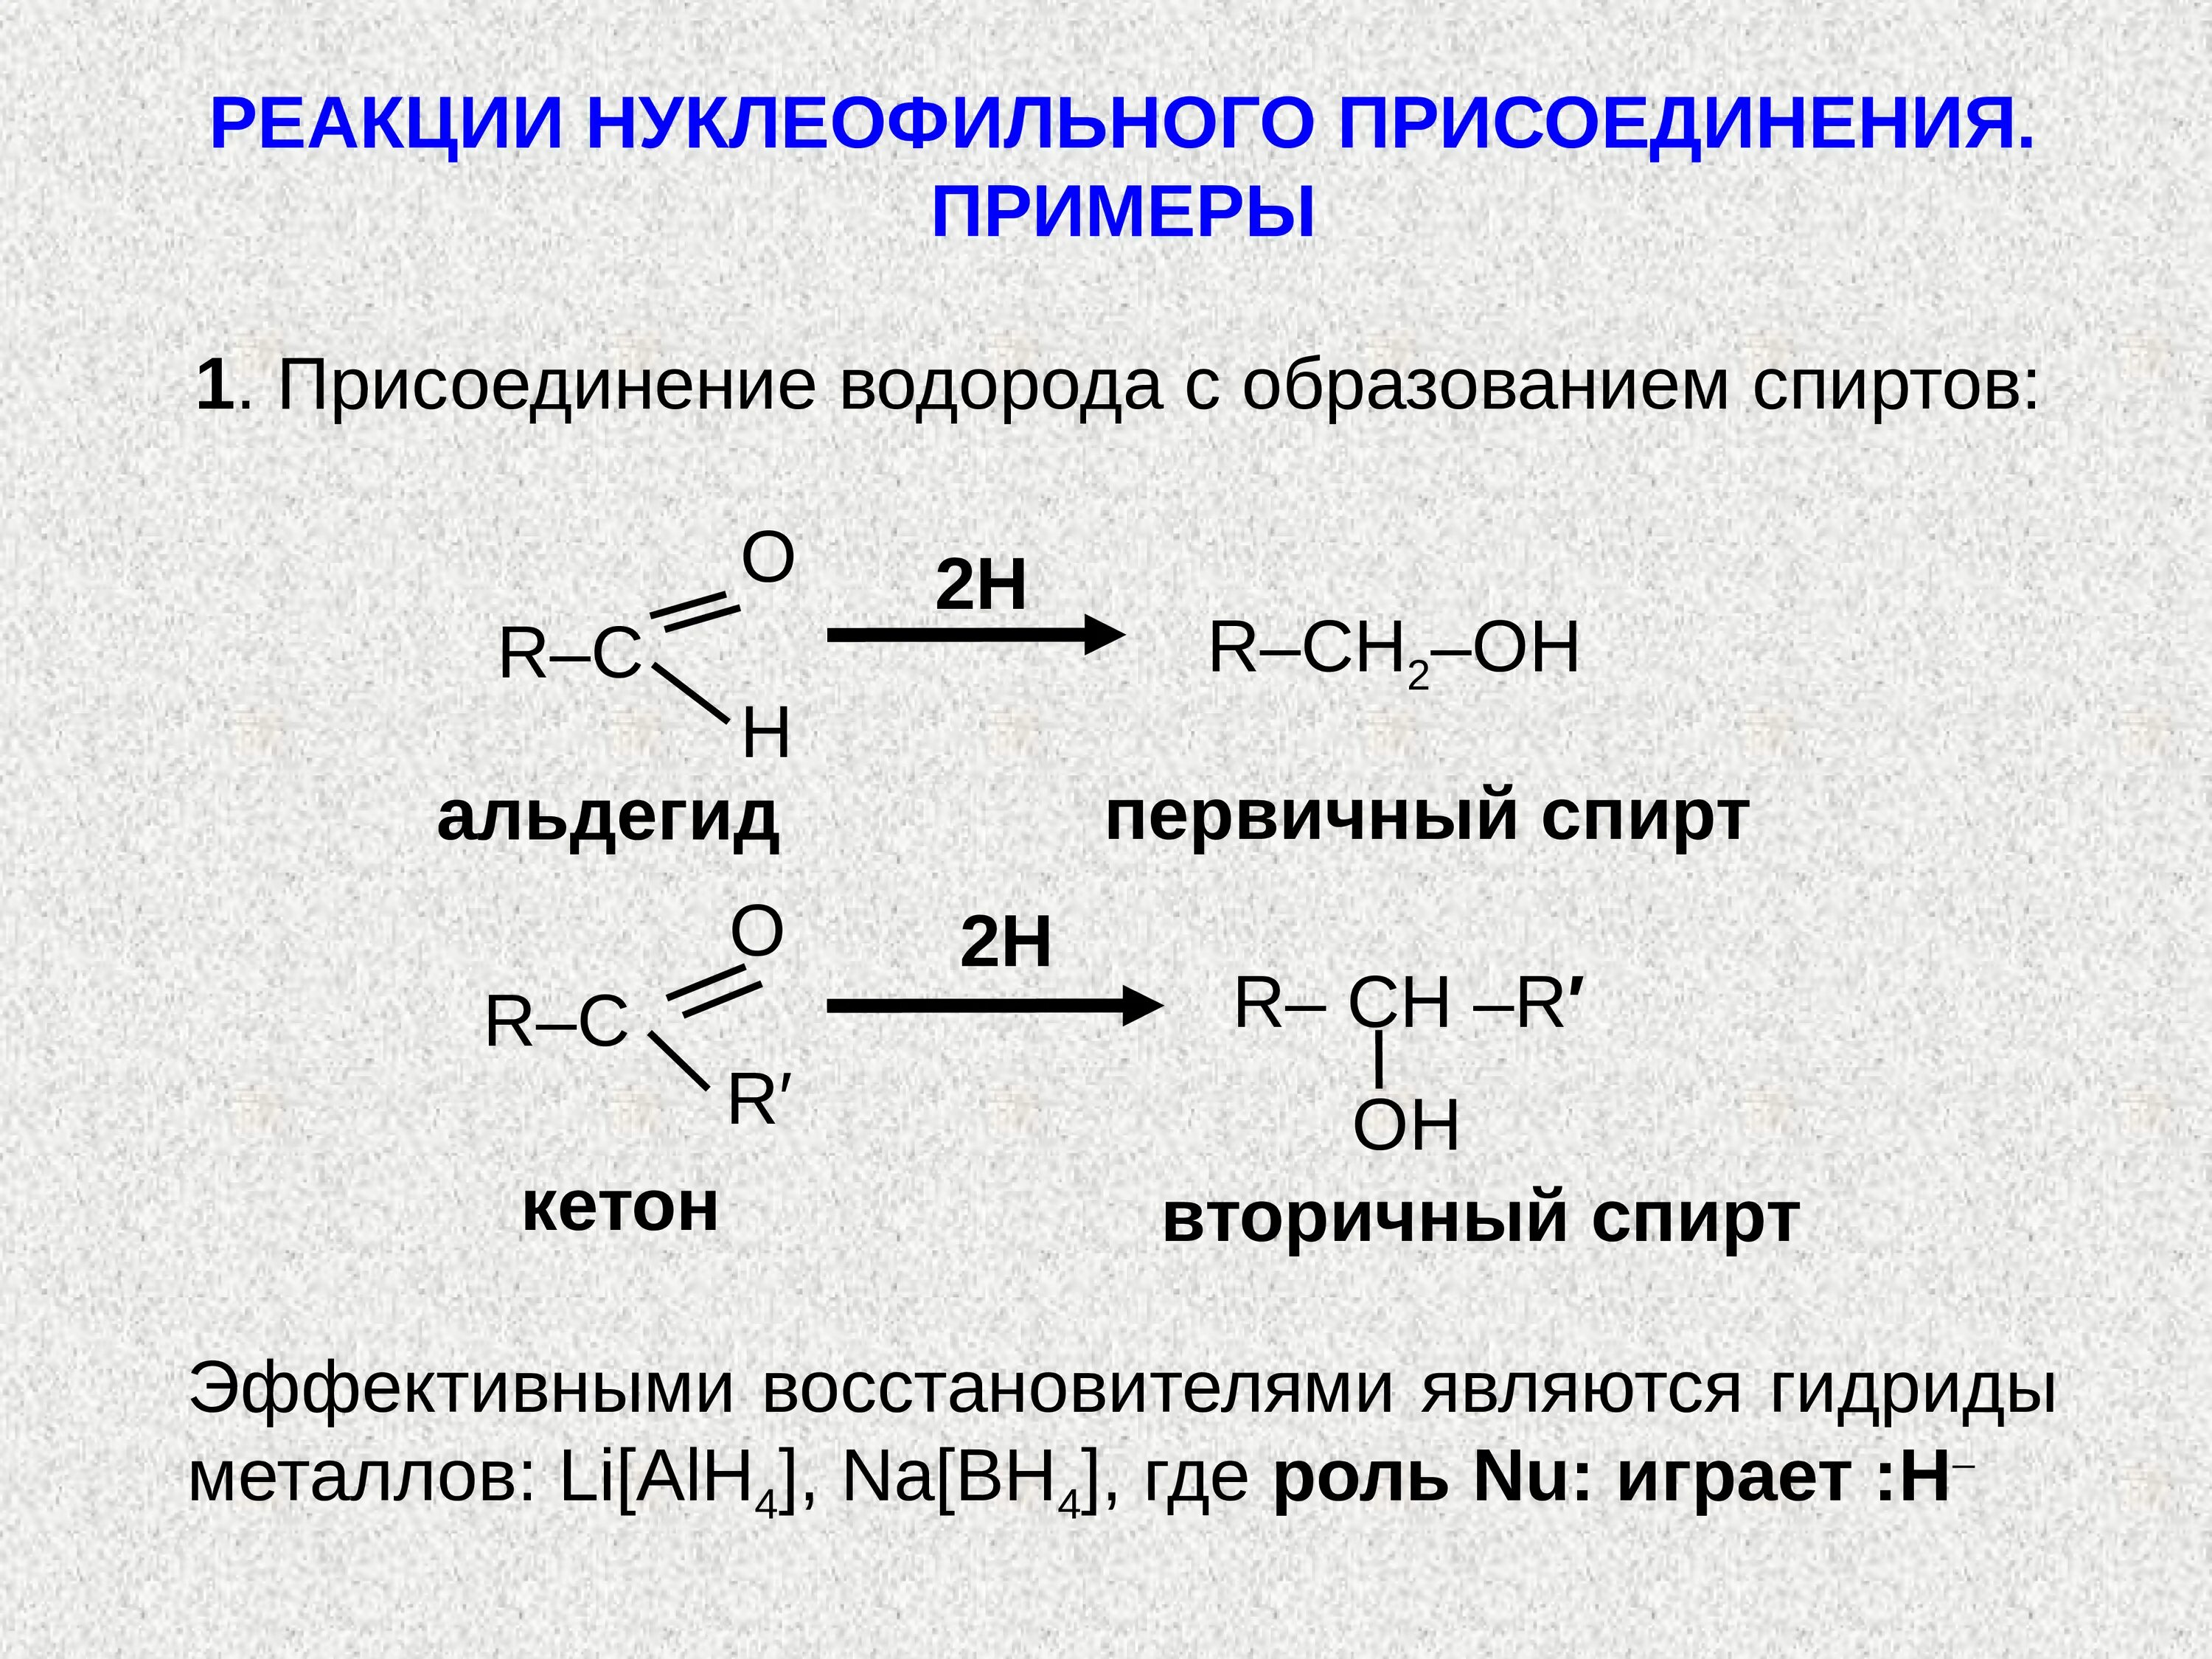 Реакция нуклеофильного присоединения альдегидов. Присоединение спиртов альдегидов и кетонов. Нуклеофильное присоединение альдегидов и кетонов. Реакции нуклеофильного присоединения альдегидов и кетонов.